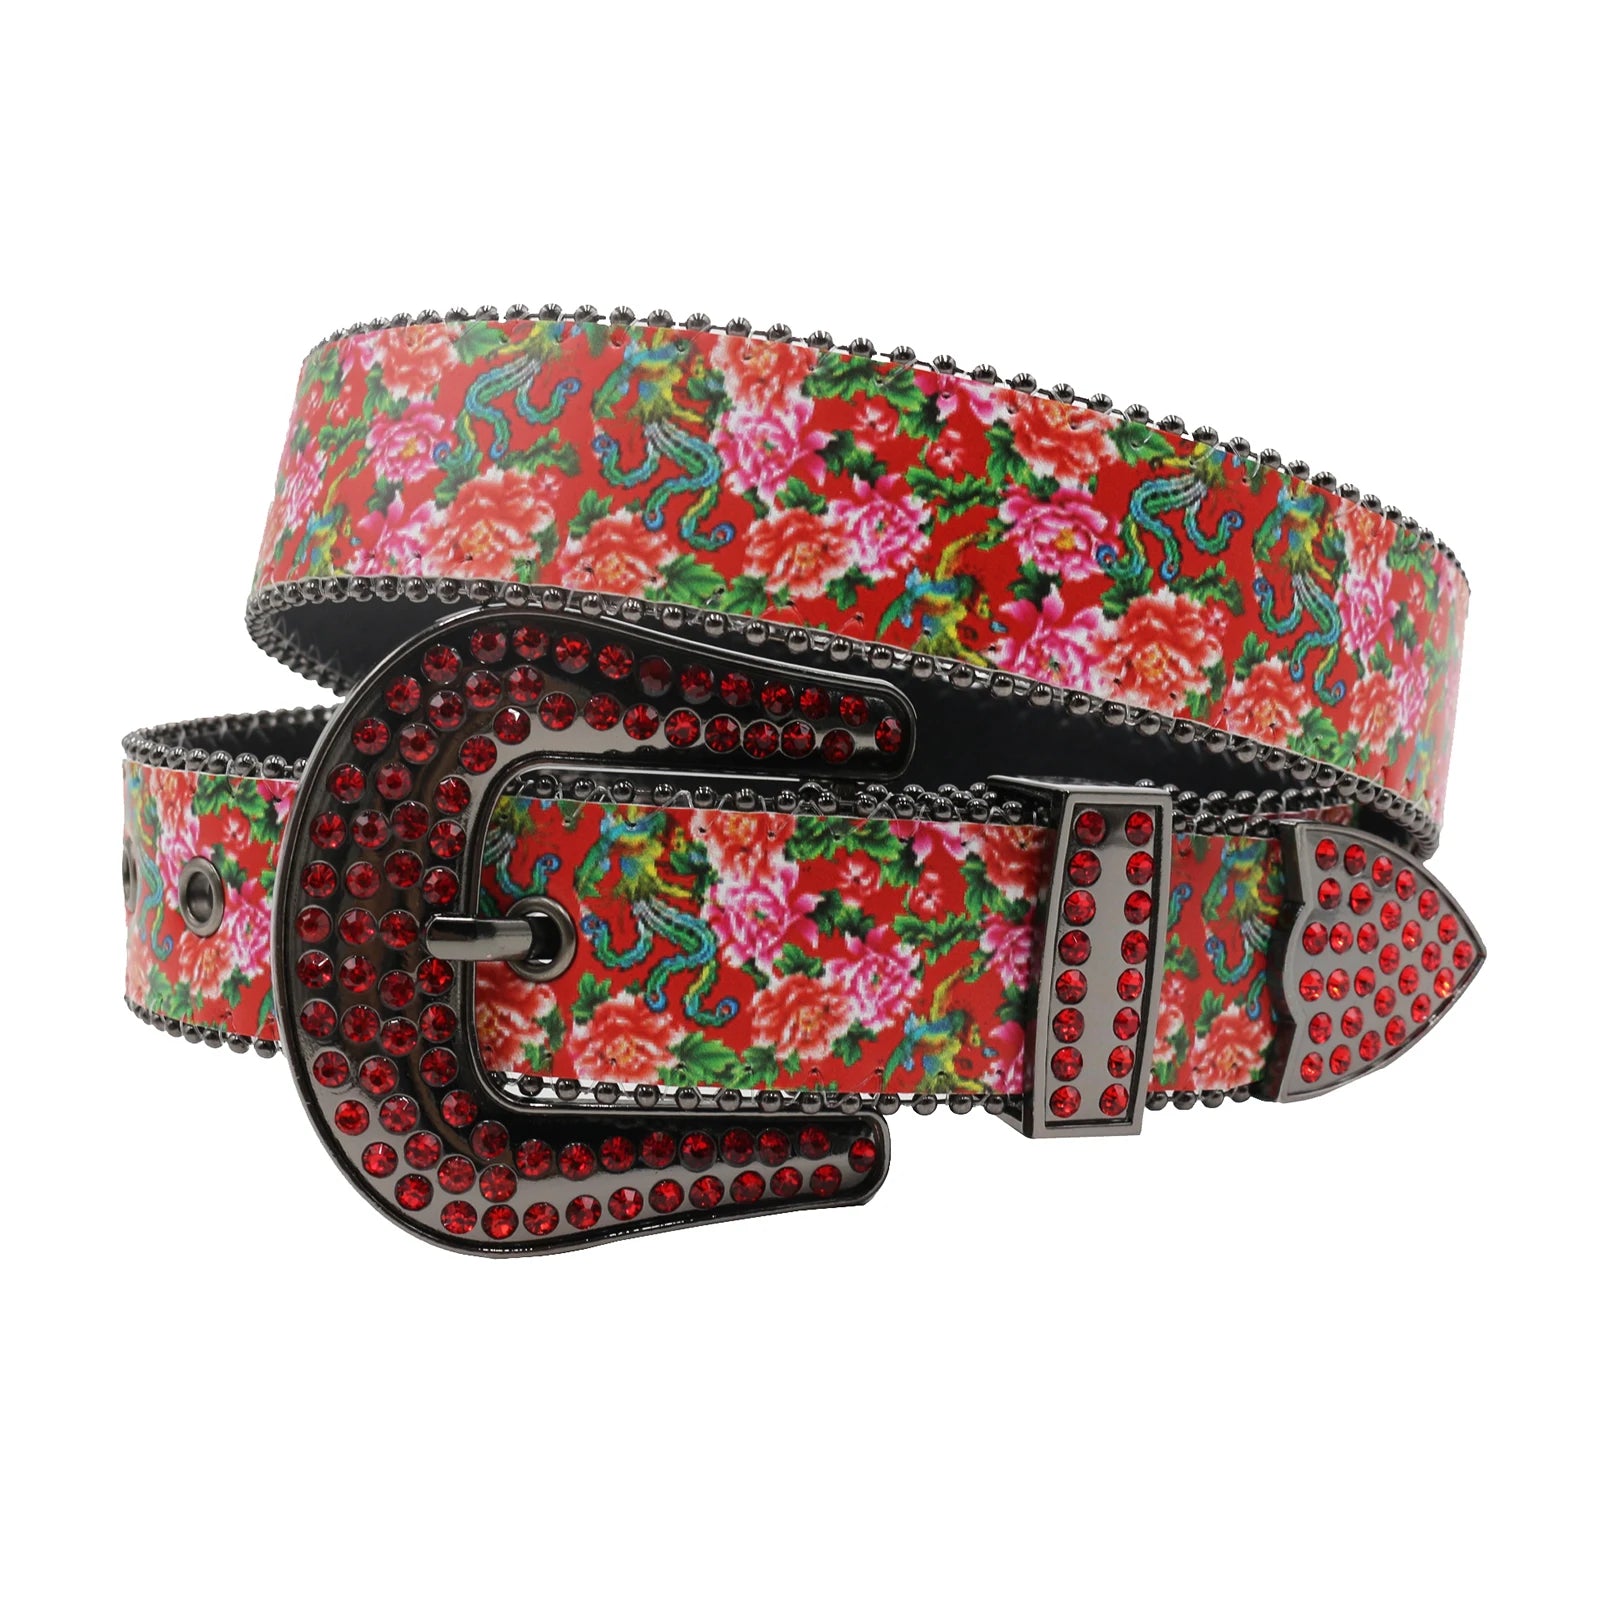 TEEK - Flower Print Belts BELT theteekdotcom MDH-Red 125cm/49.21in 